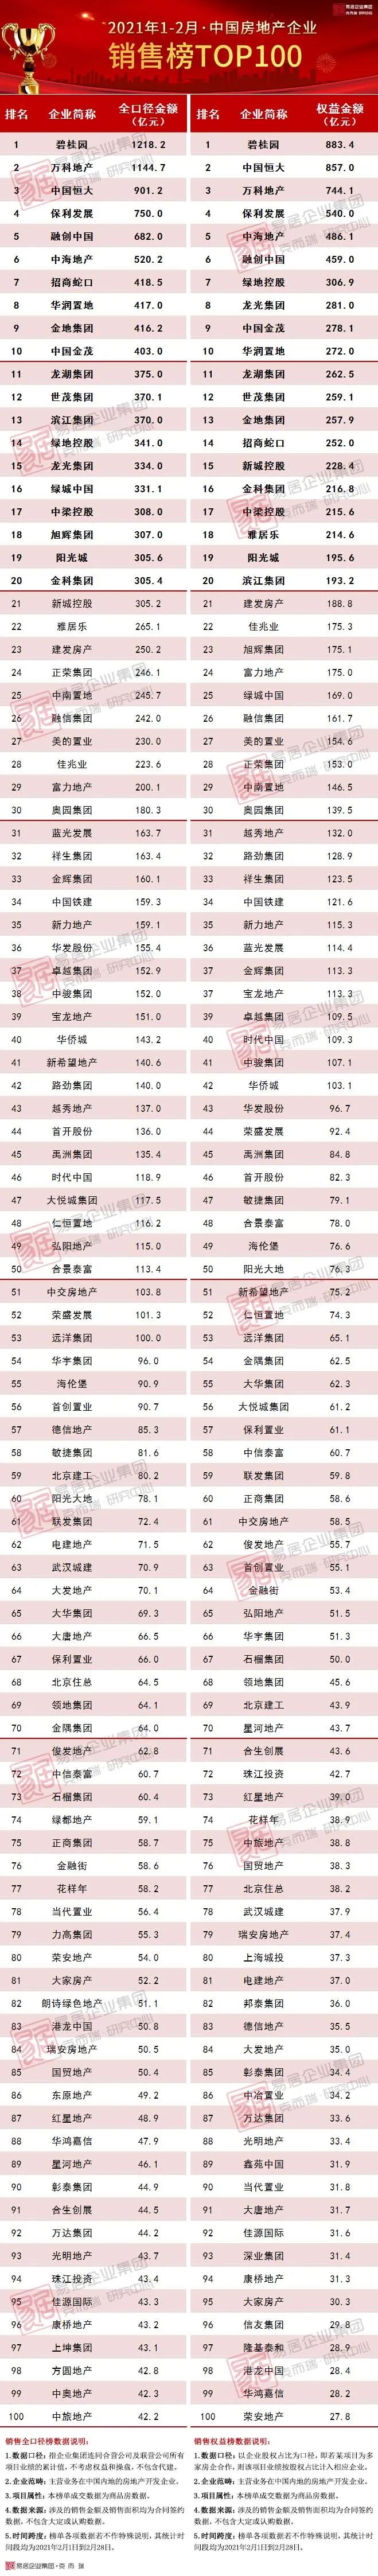 2021年1-2月中国房地产企业销售TOP100排行榜